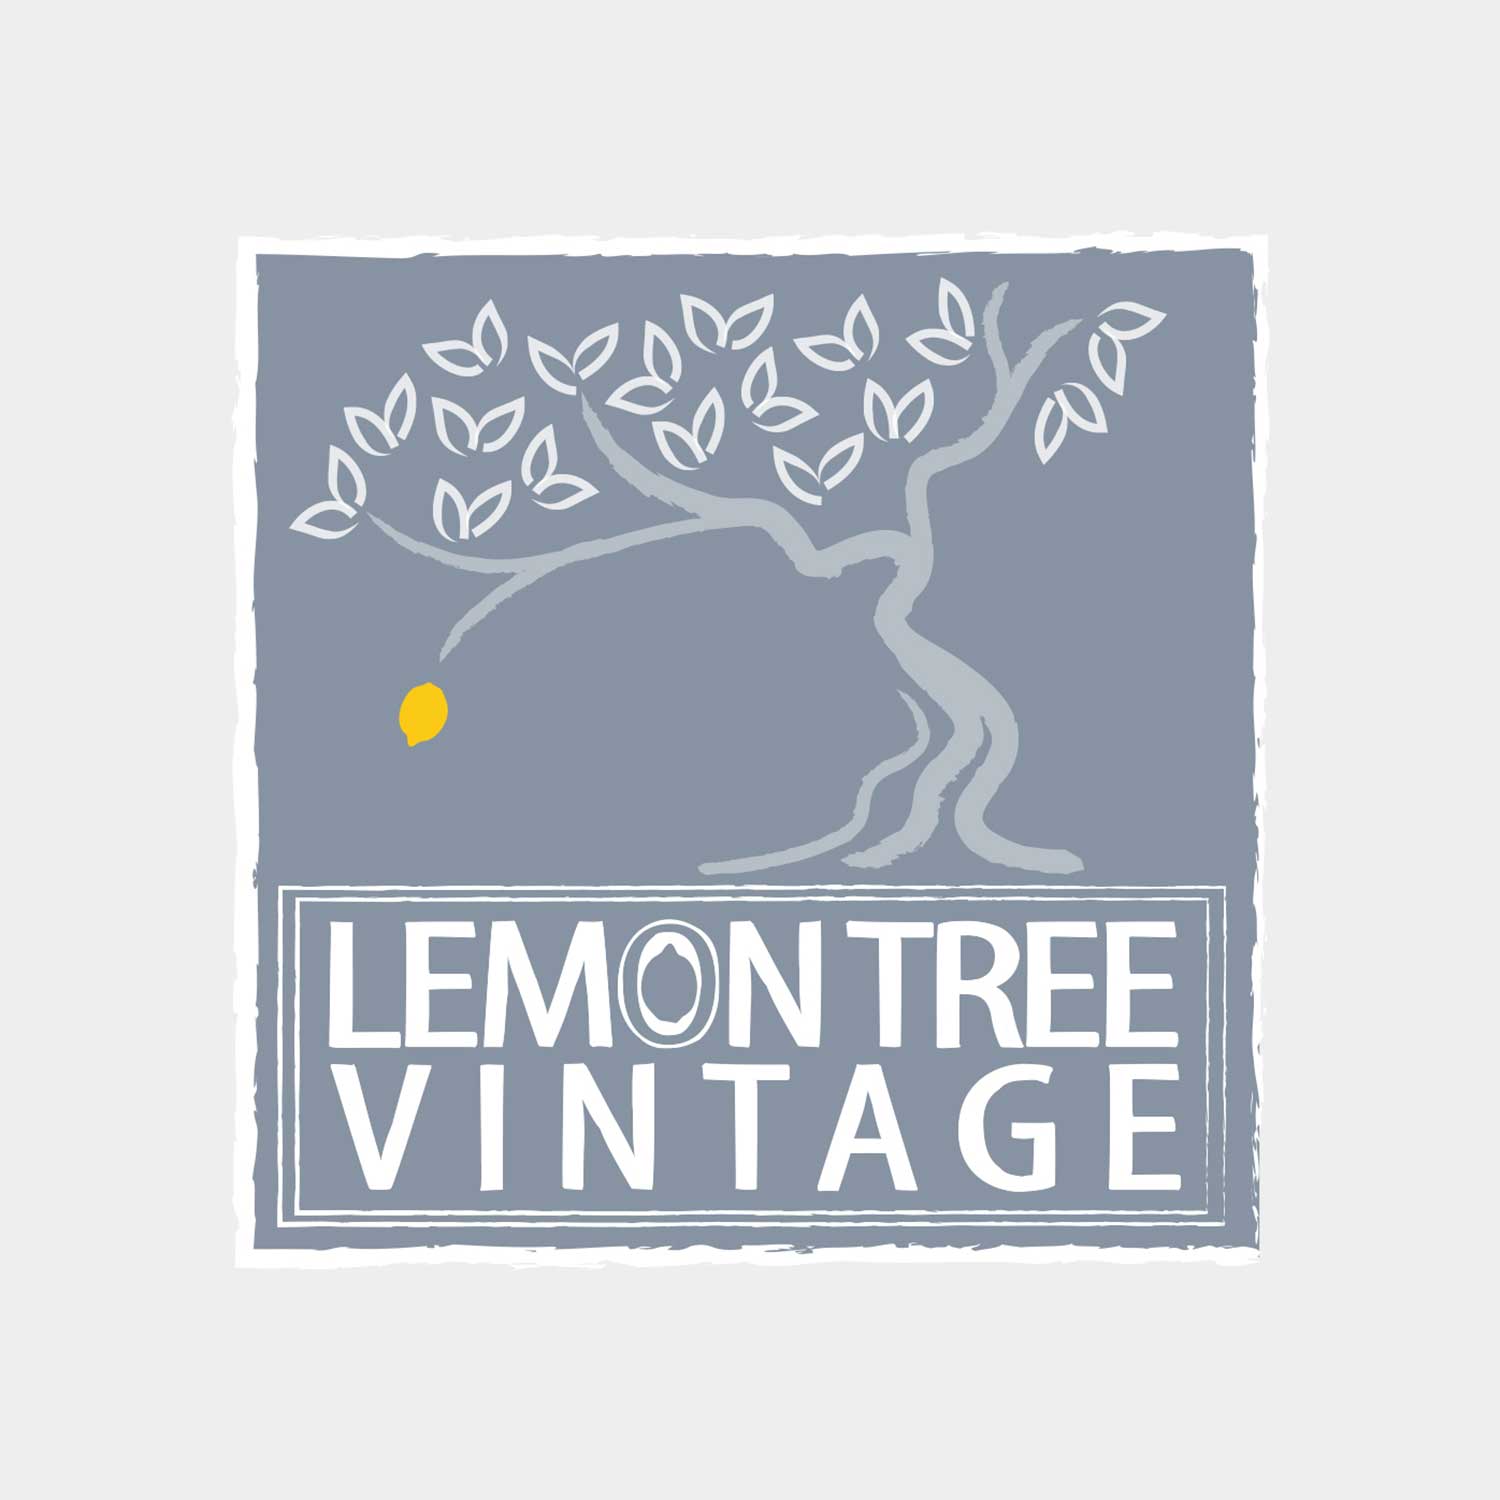 Lemon Tree Vintage